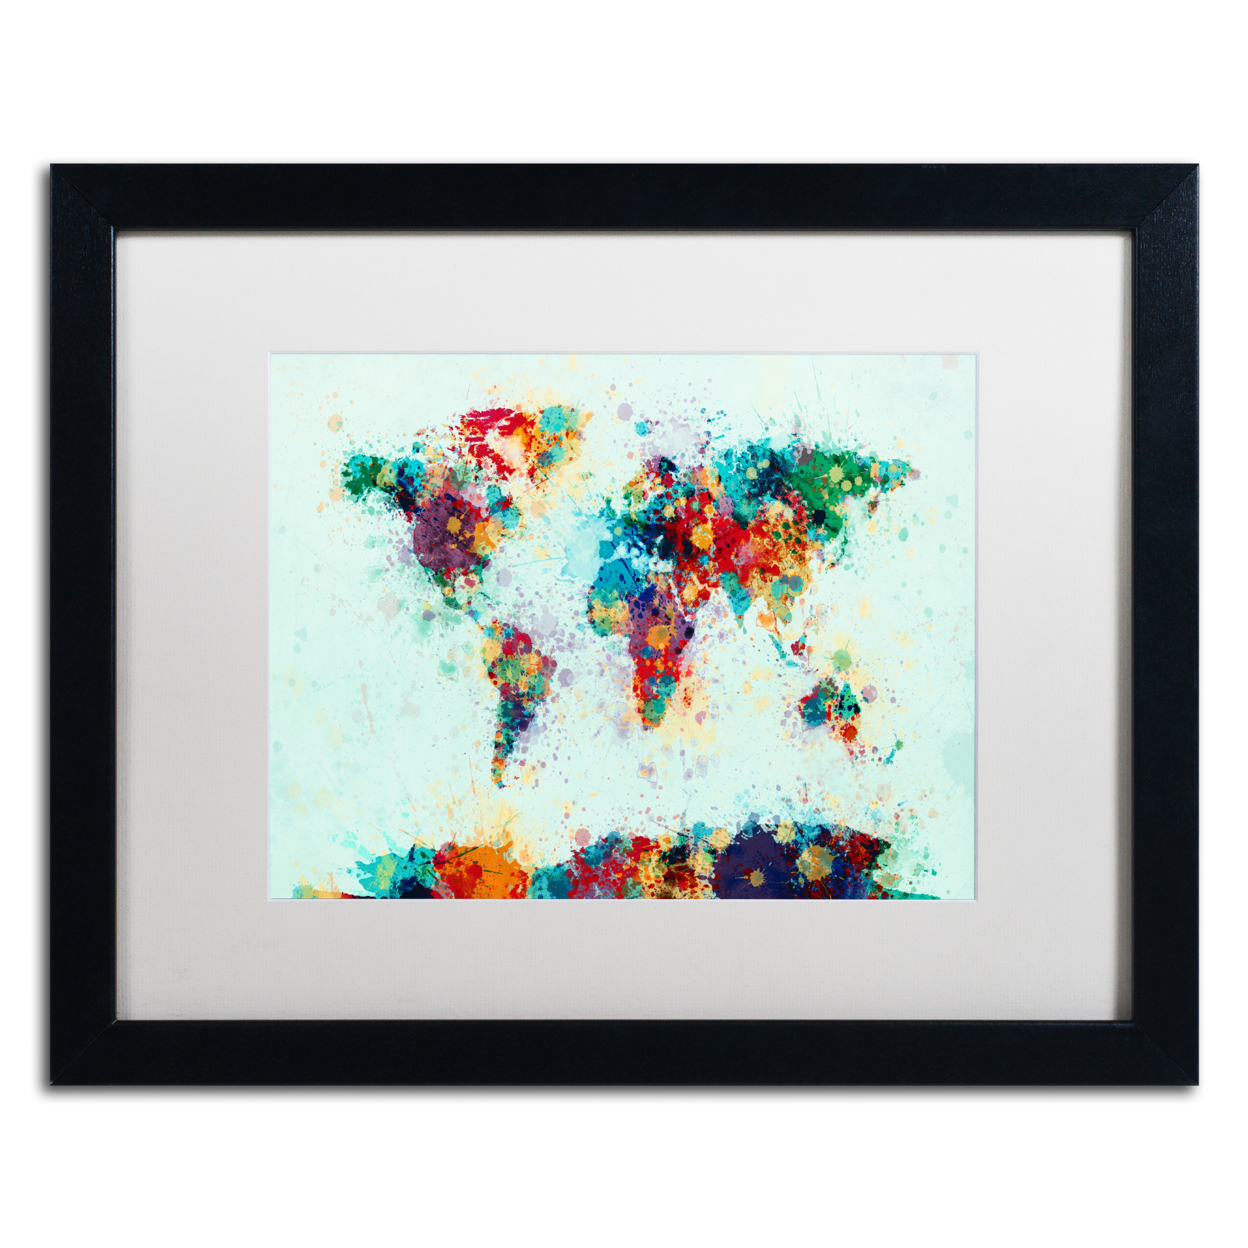 Michael Tompsett 'World Map Paint Splashes' Black Wooden Framed Art 18 X 22 Inches